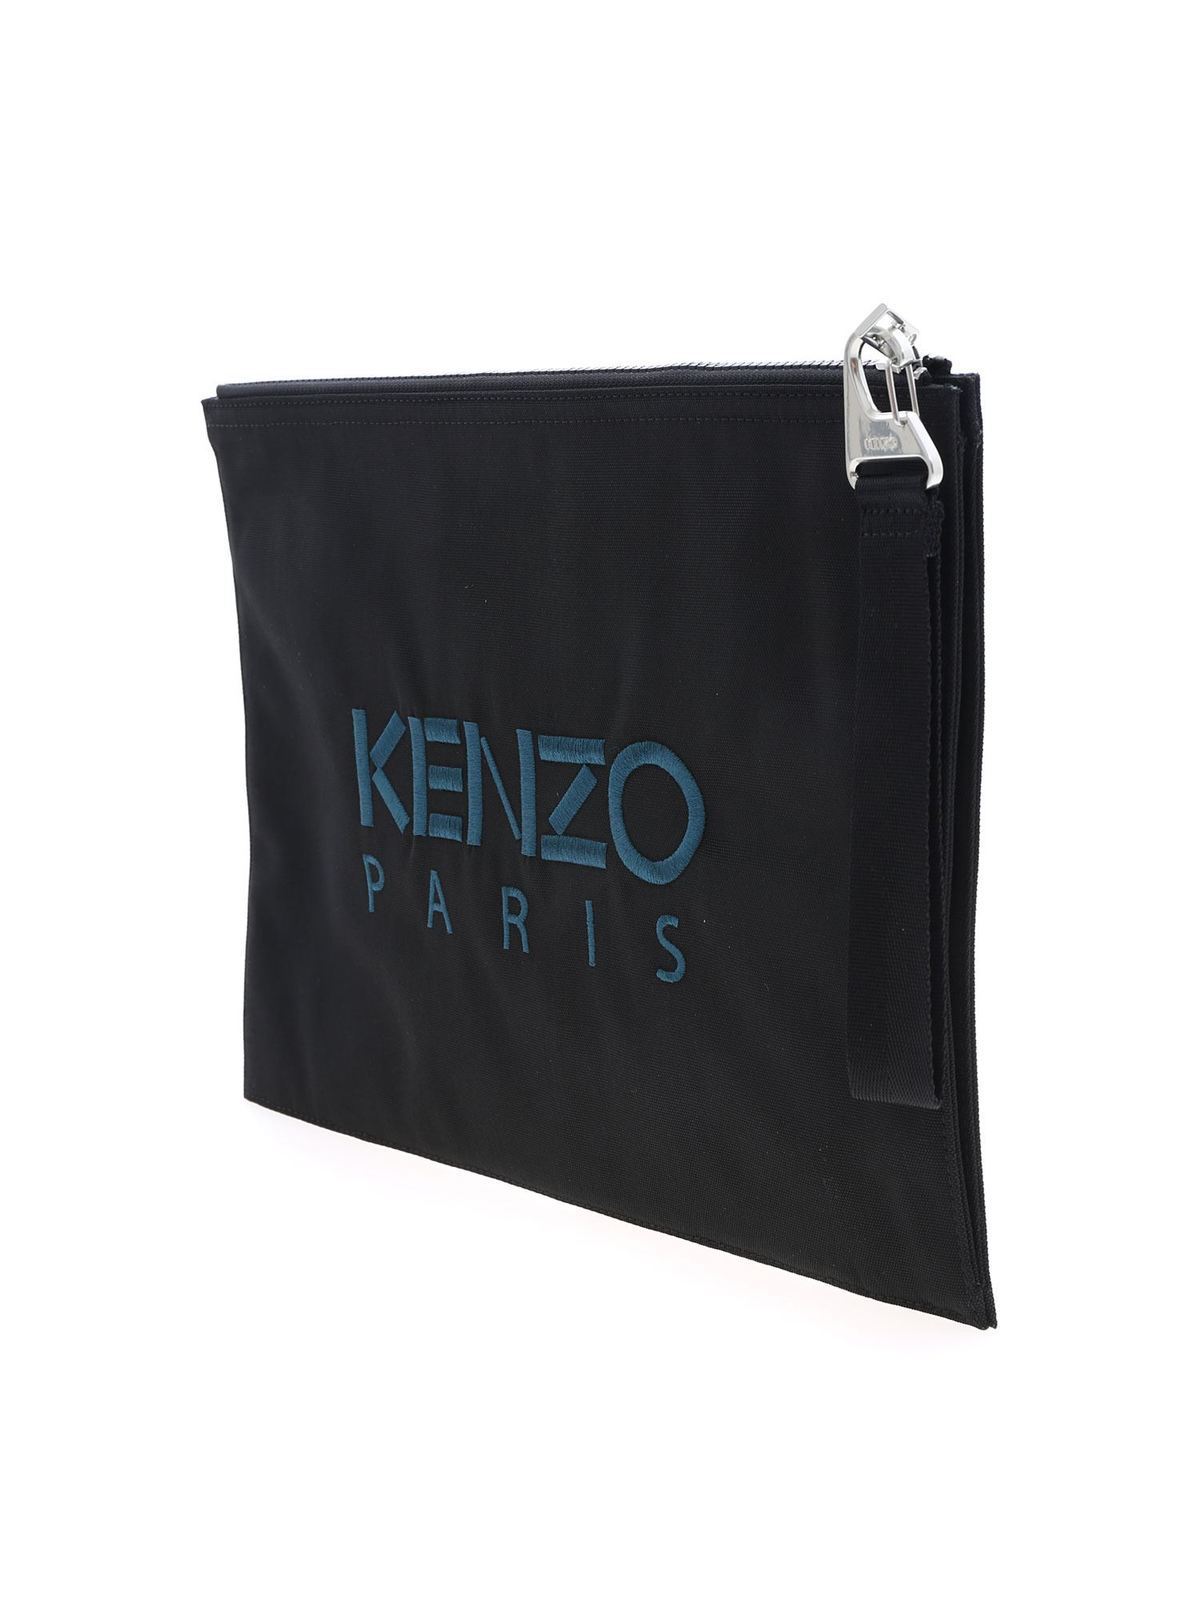 kenzo document holder